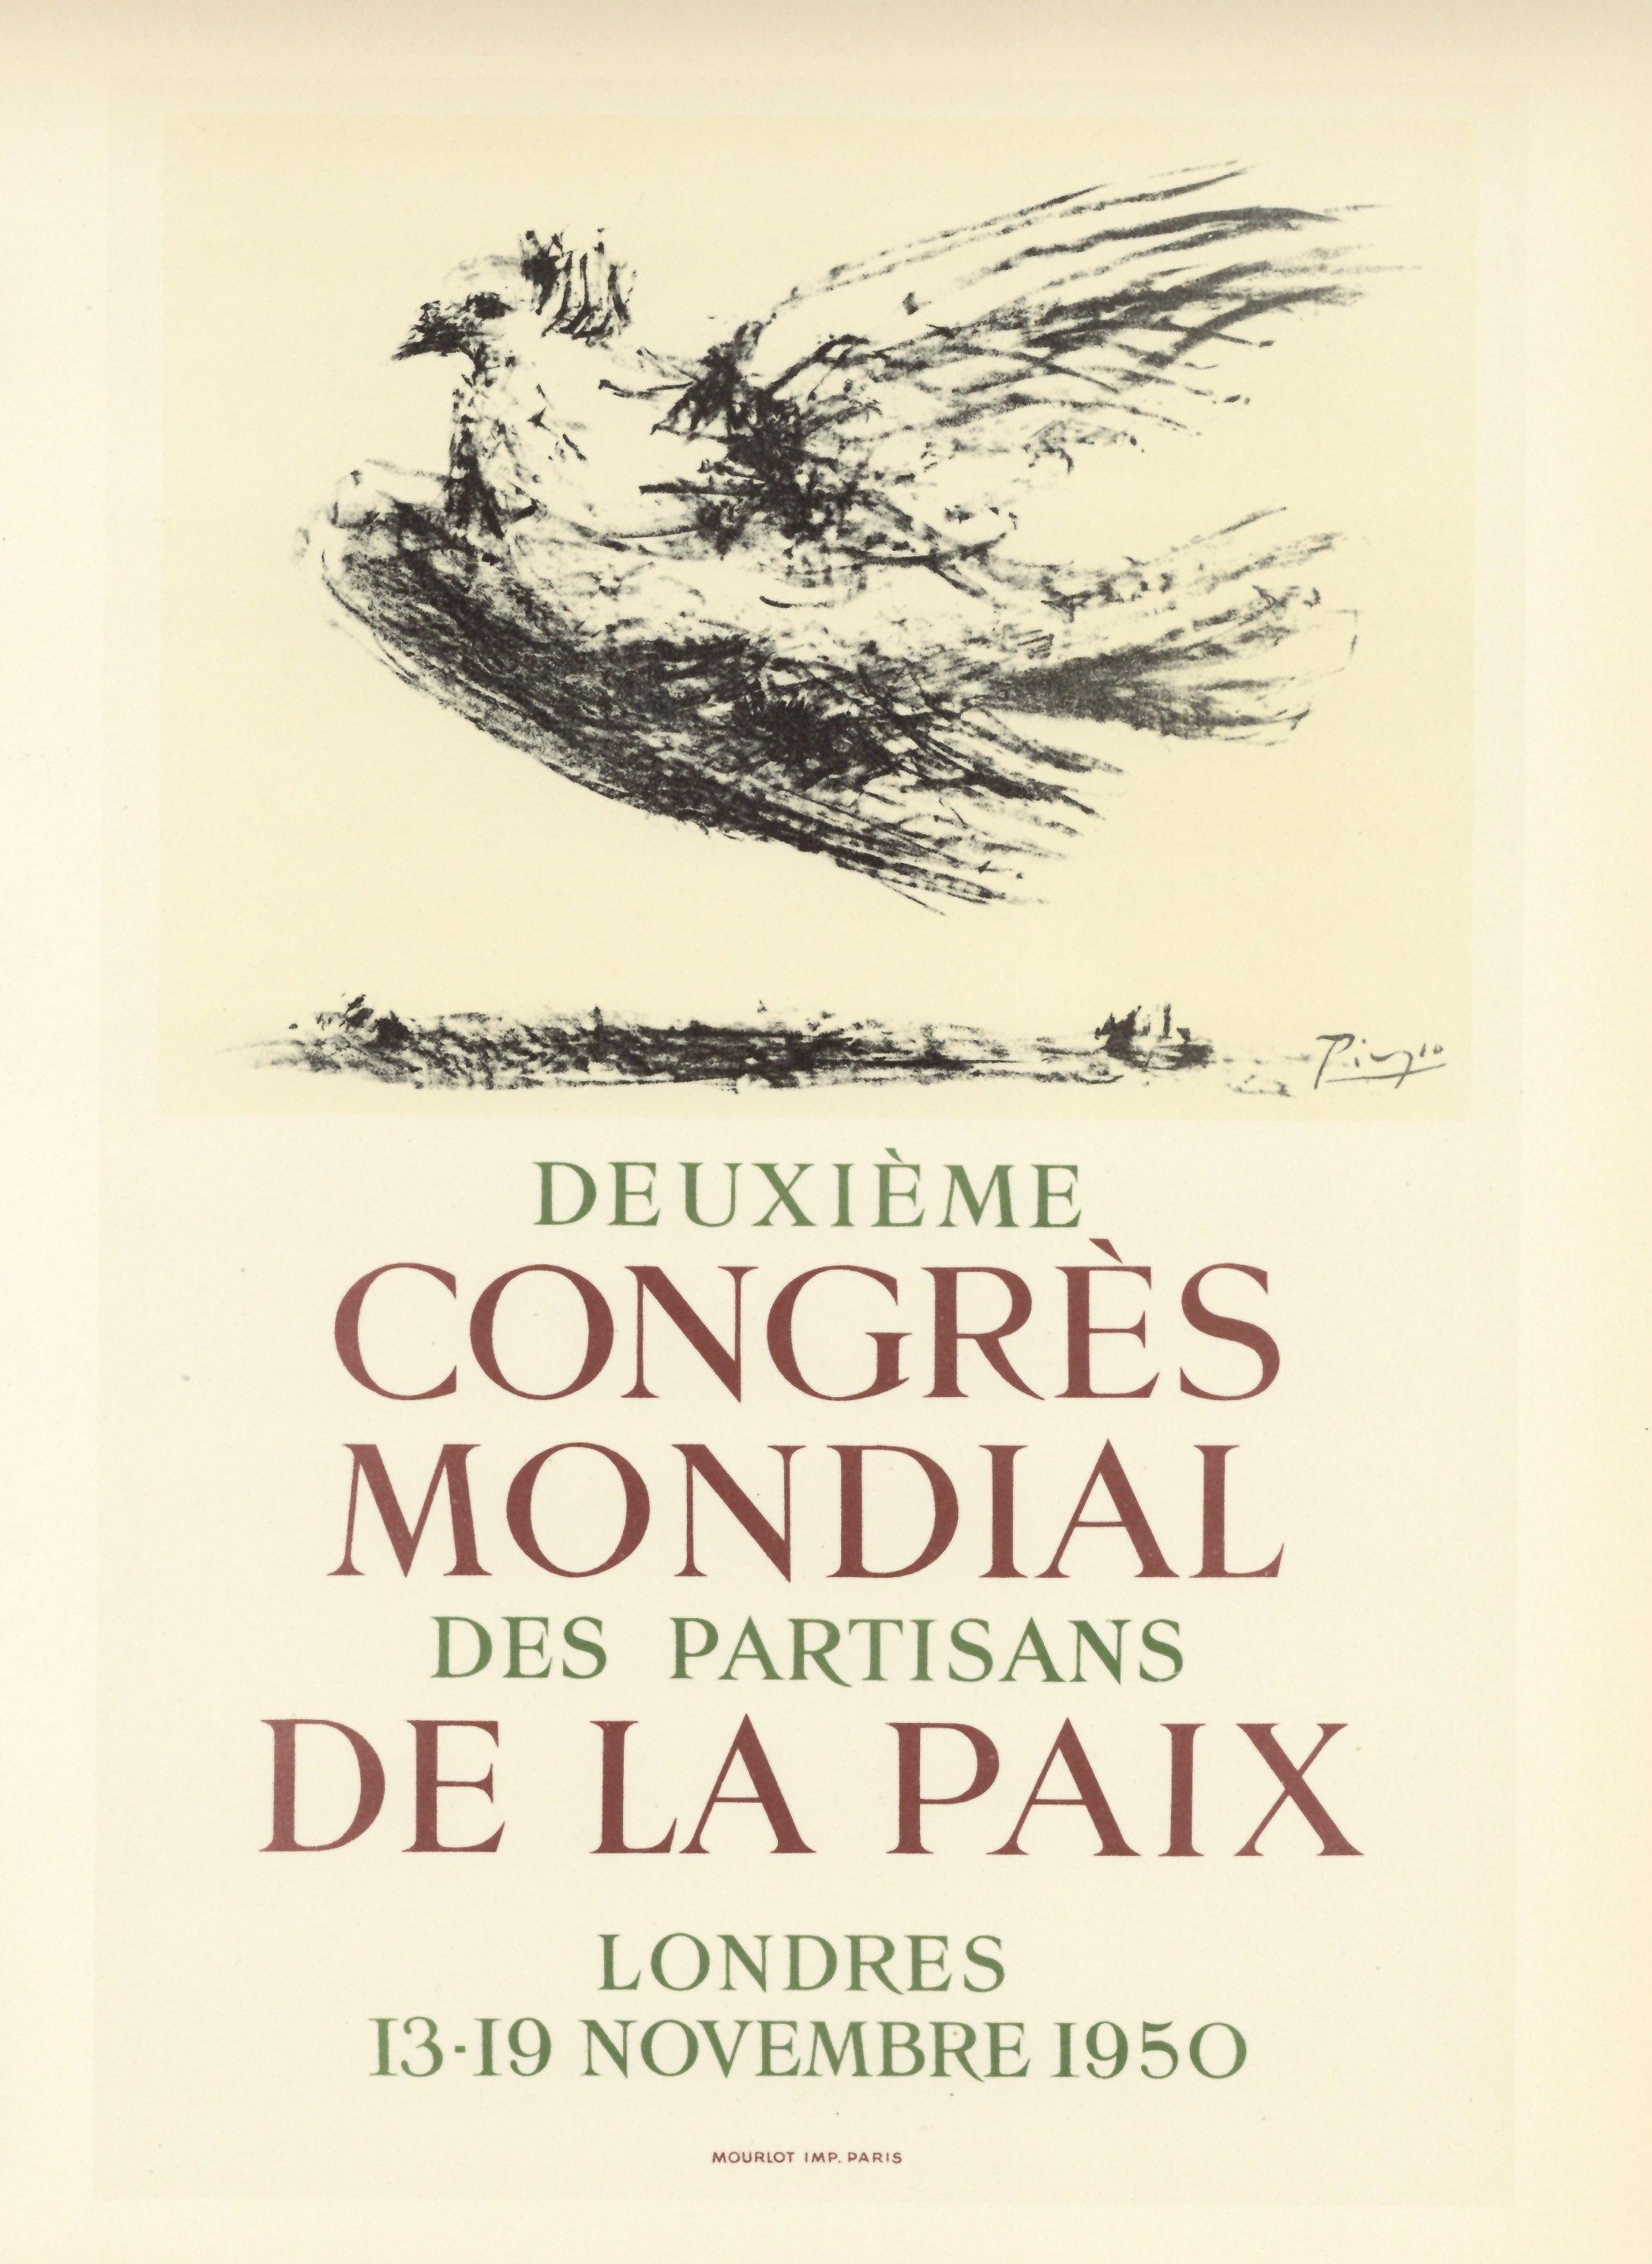 "Deuxieme Congres de la Paix" lithograph poster - Print by (after) Pablo Picasso